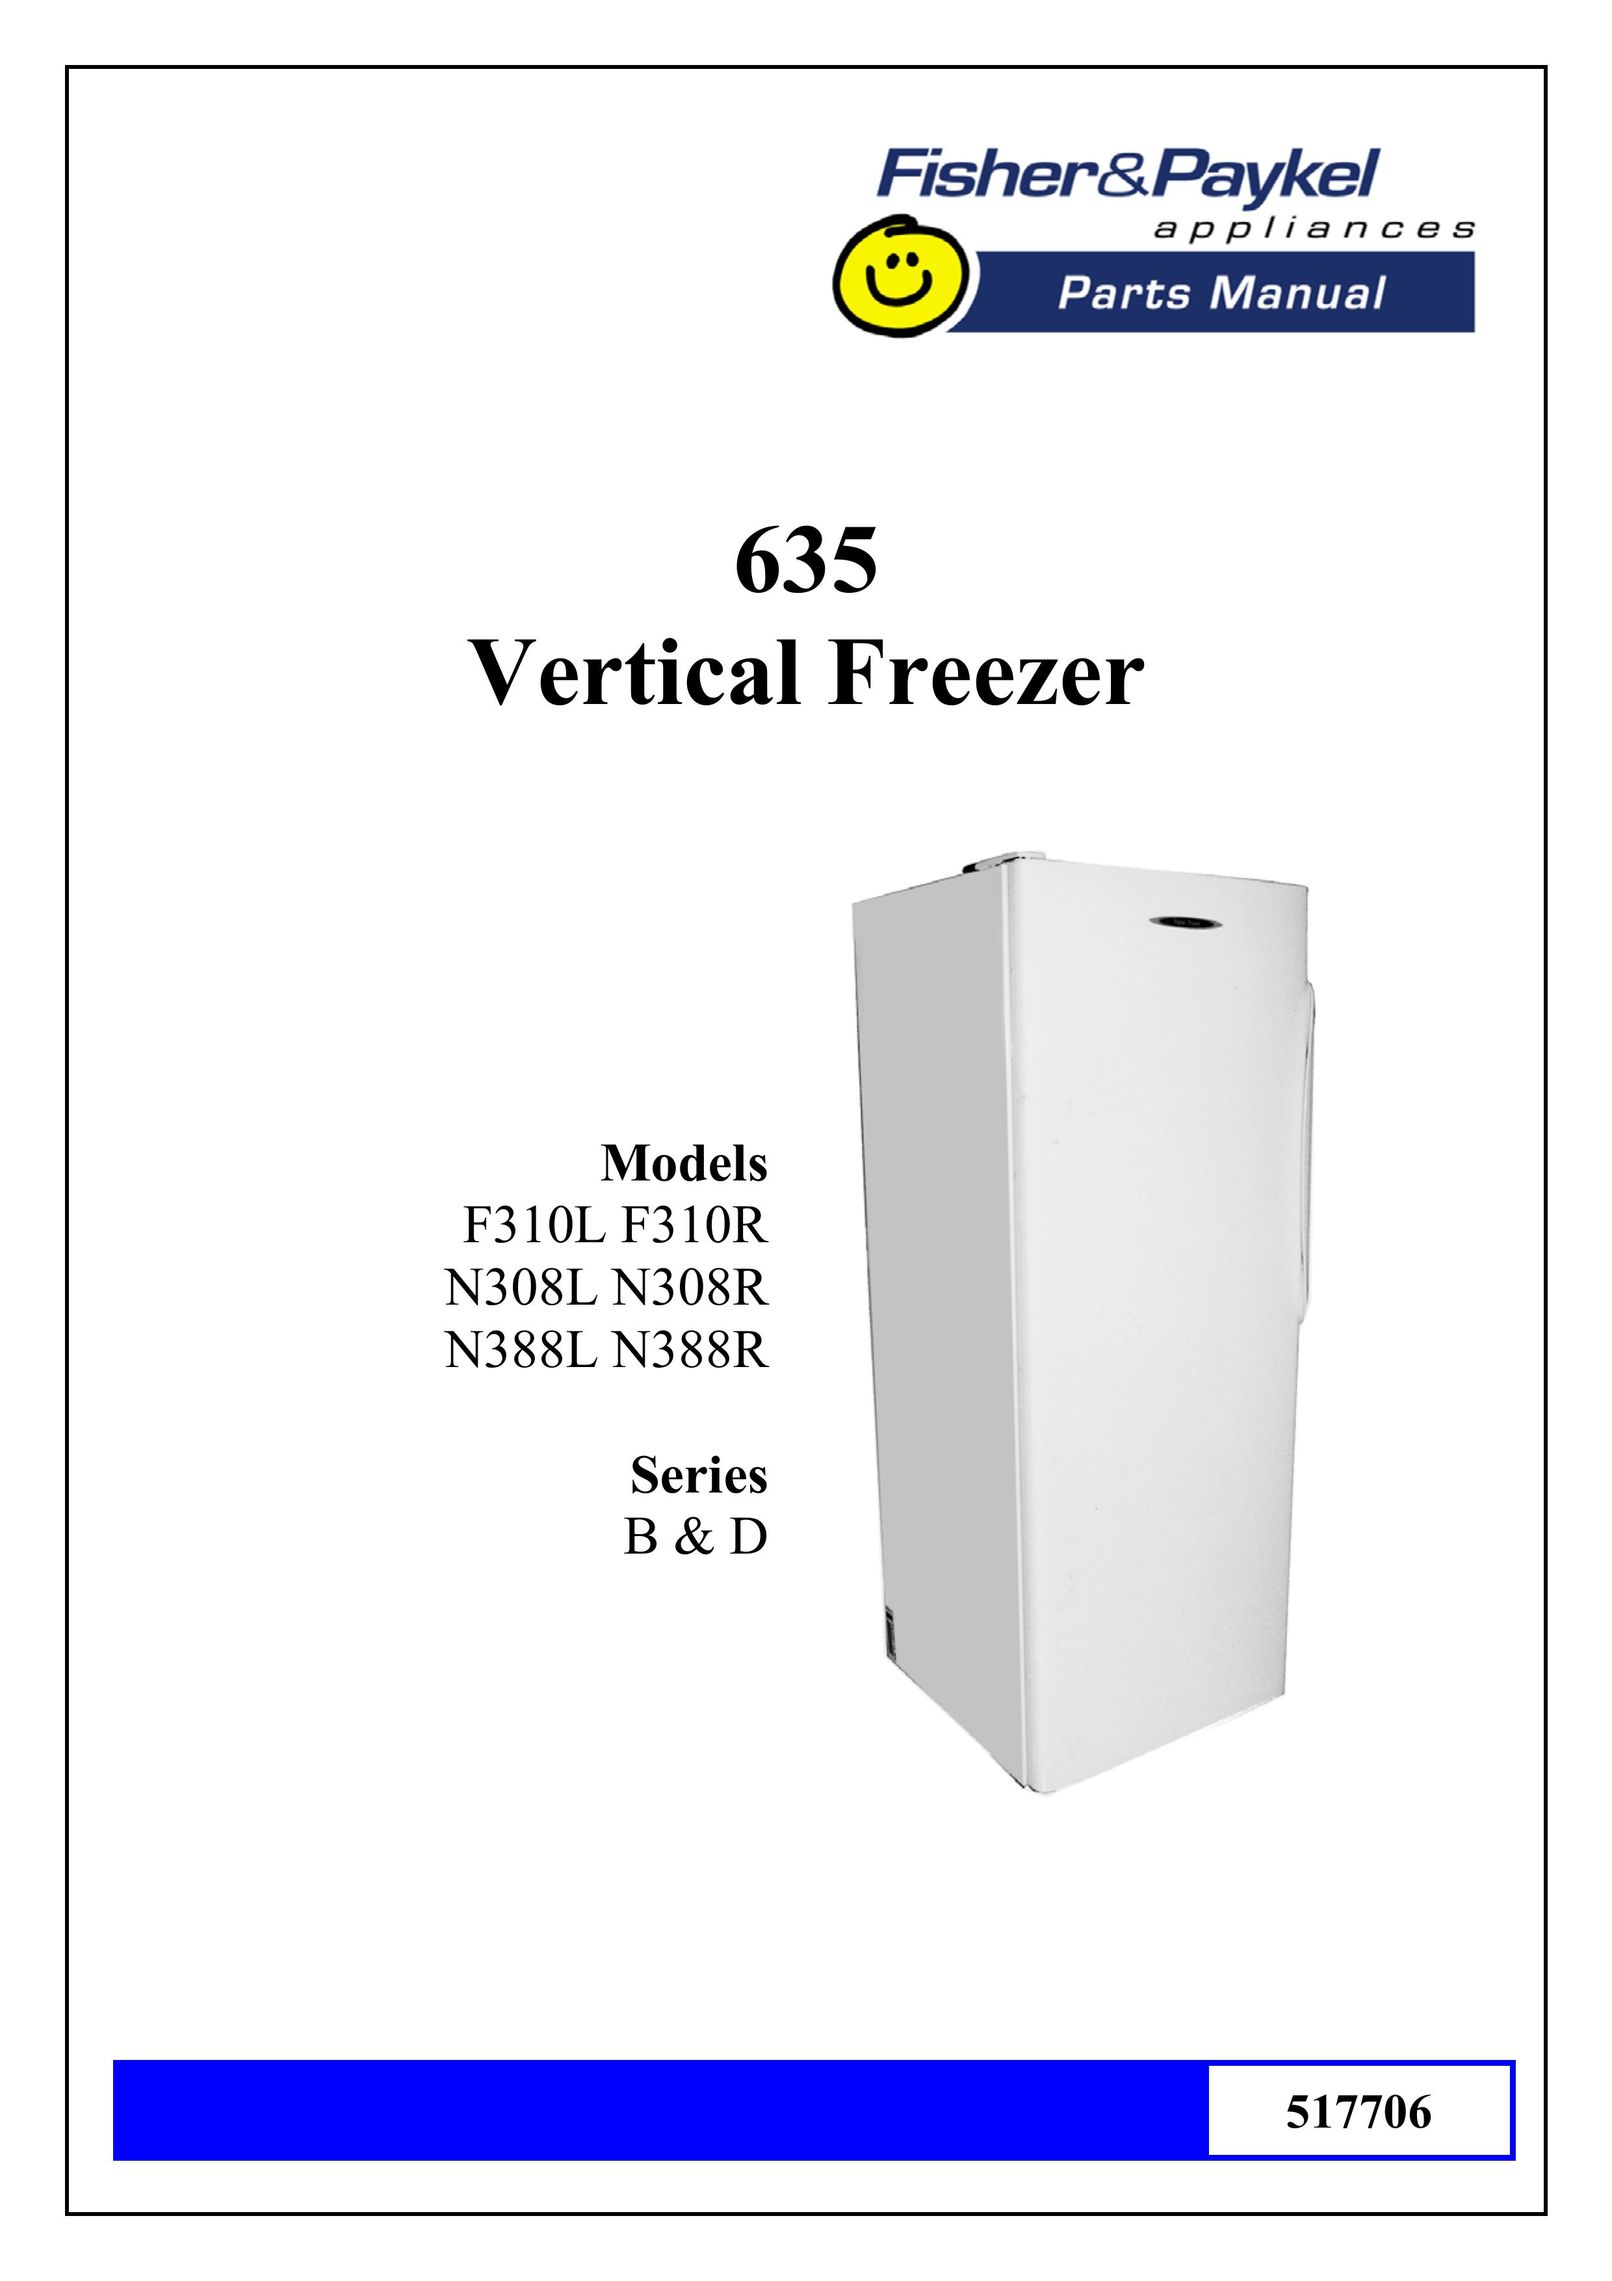 Fisher & Paykel N308 Freezer User Manual